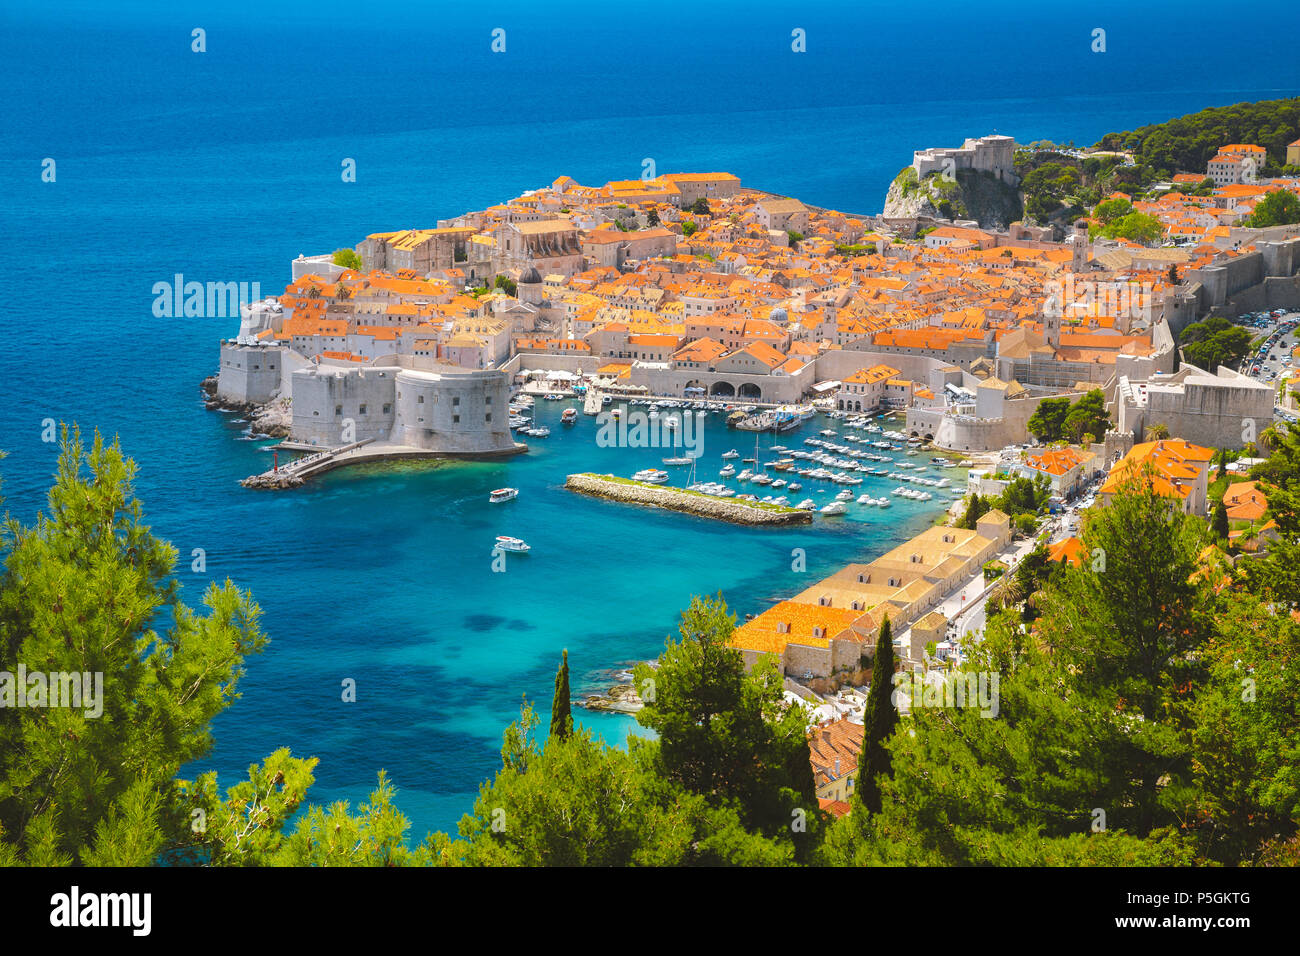 Vue panoramique vue aérienne de la ville historique de Dubrovnik, l'une des plus célèbres destinations touristiques de la Méditerranée, de Srd mountain Banque D'Images